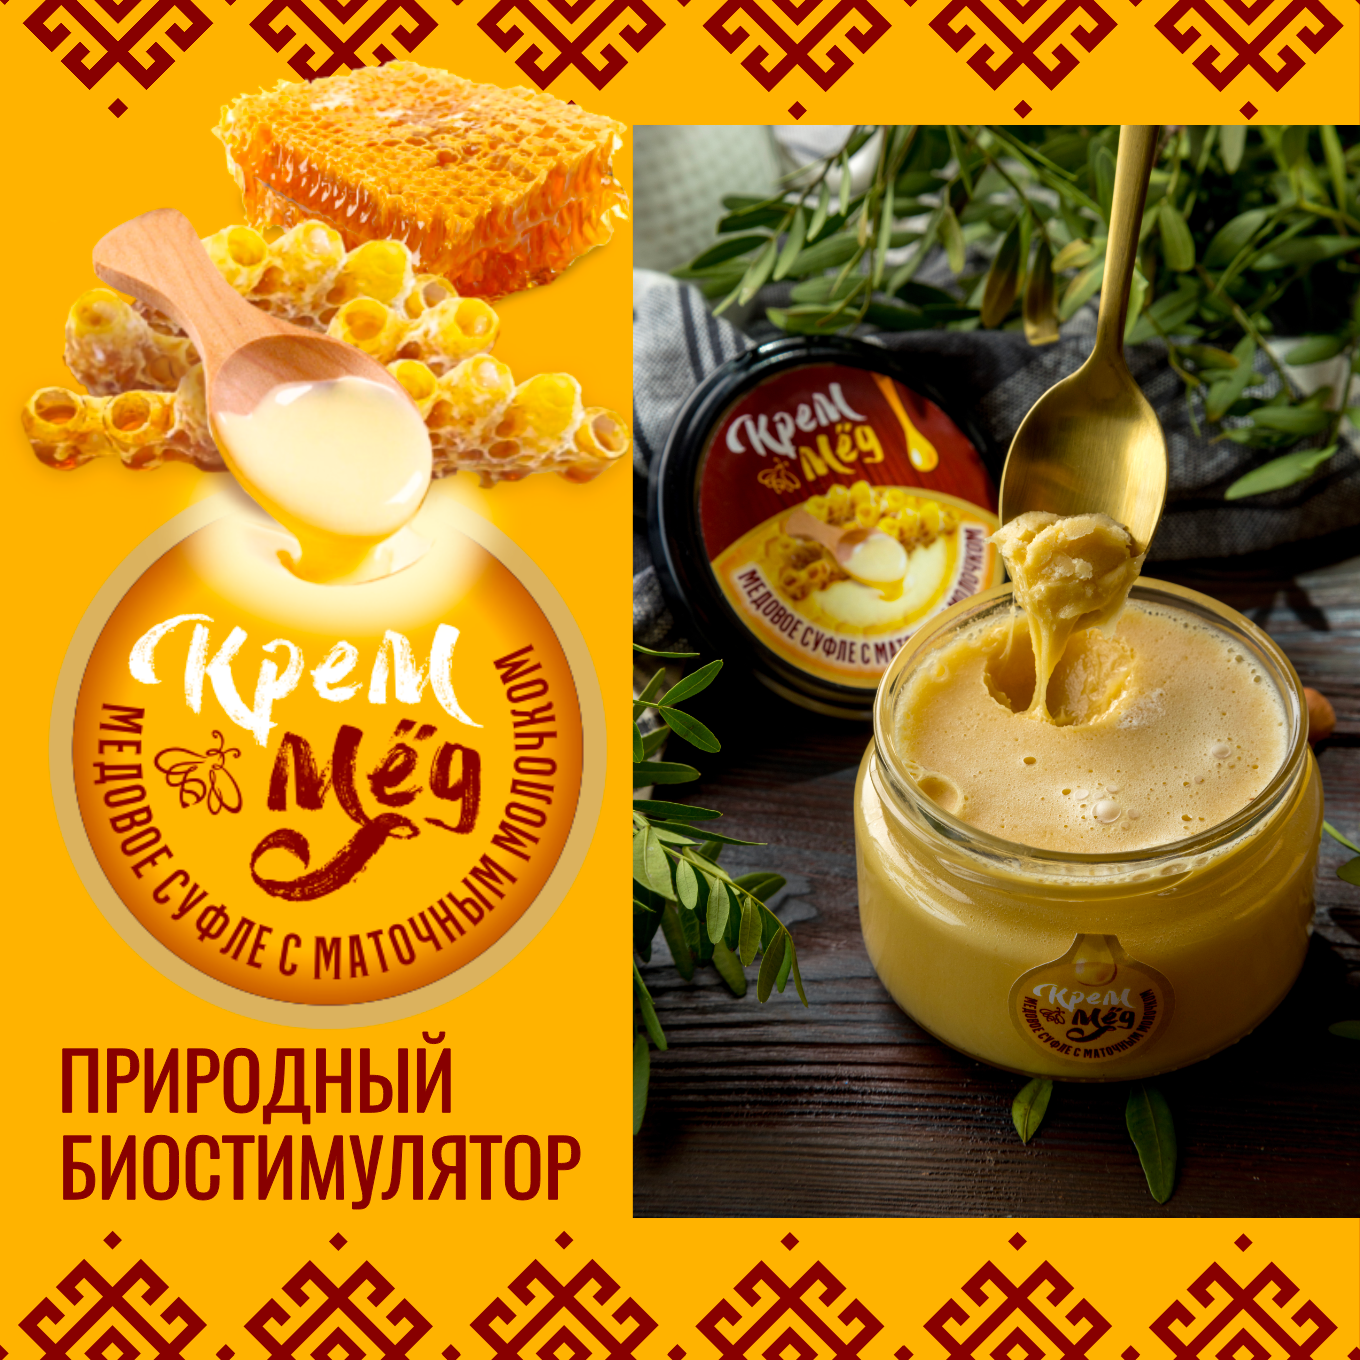 Крем-мед с маточным молочком 300 гр.